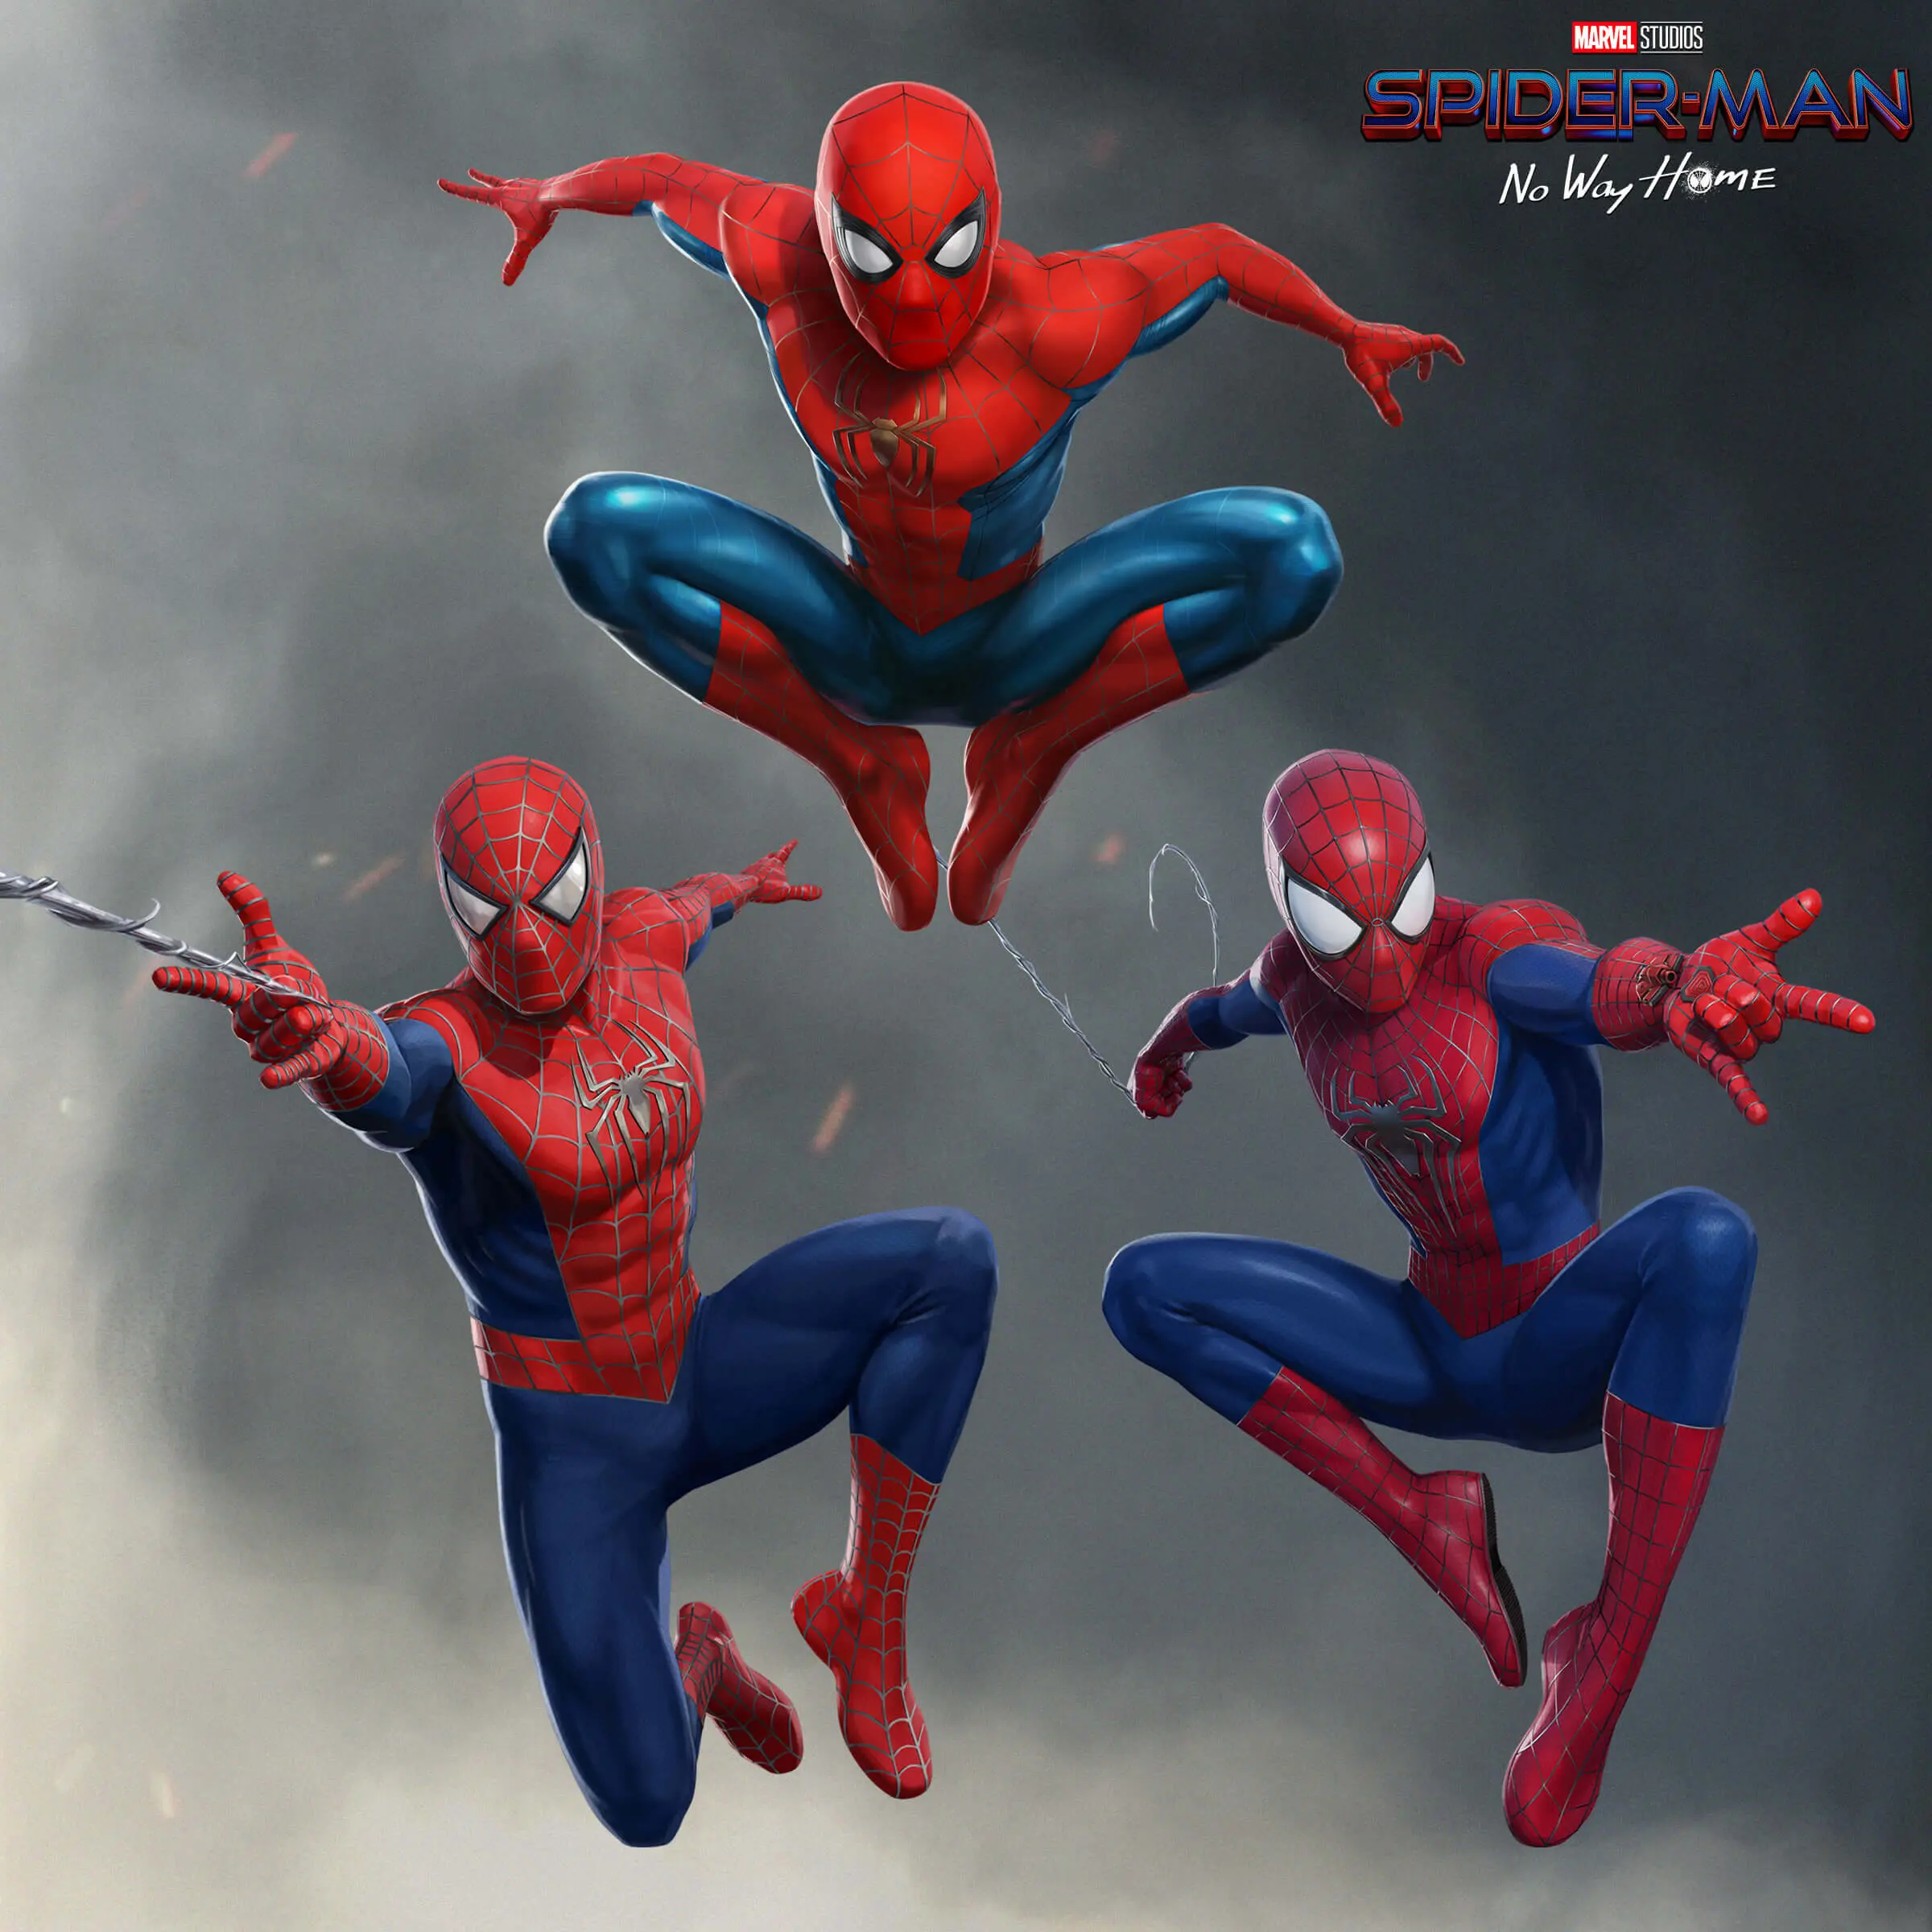 Os três heróis surgem juntos em arte de Homem-Aranha 3.